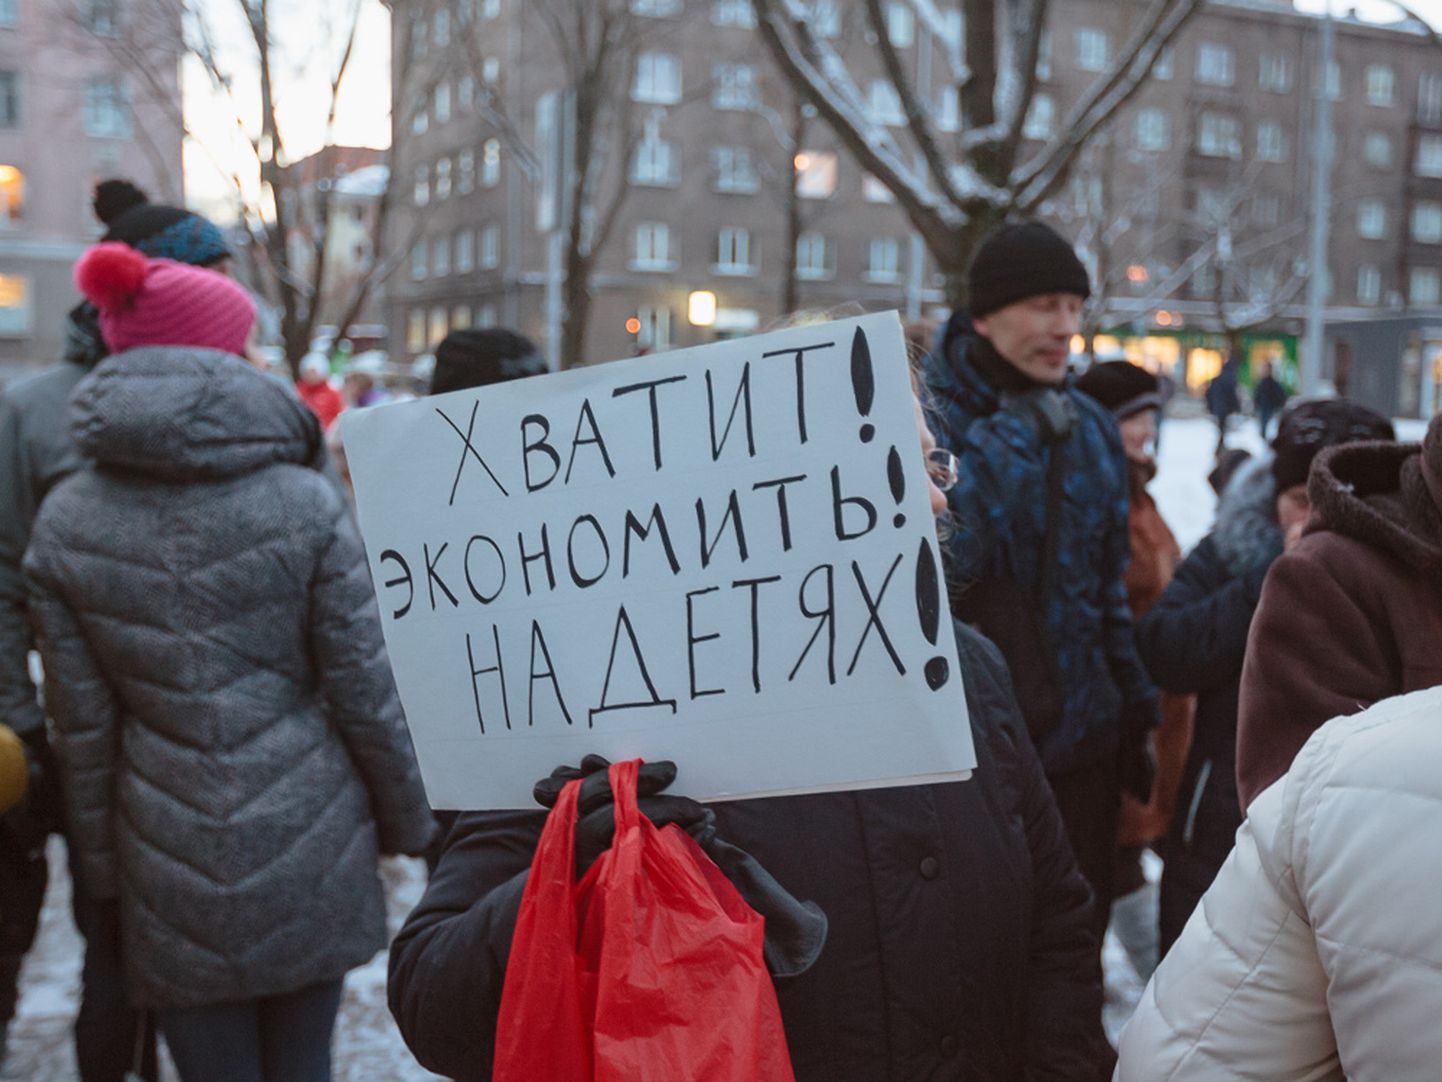 2016. aasta detsembris korraldasid narvalased meeleavalduse ning päästsid Narva haigla lasteosakonna sulgemisest. Nüüd ootavad nad, mida öeldakse neile haiglas 30. mail toimuval kohtumisel kava kohta seesama osakond ajutiselt sulgeda.

ILJA SMIRNOV